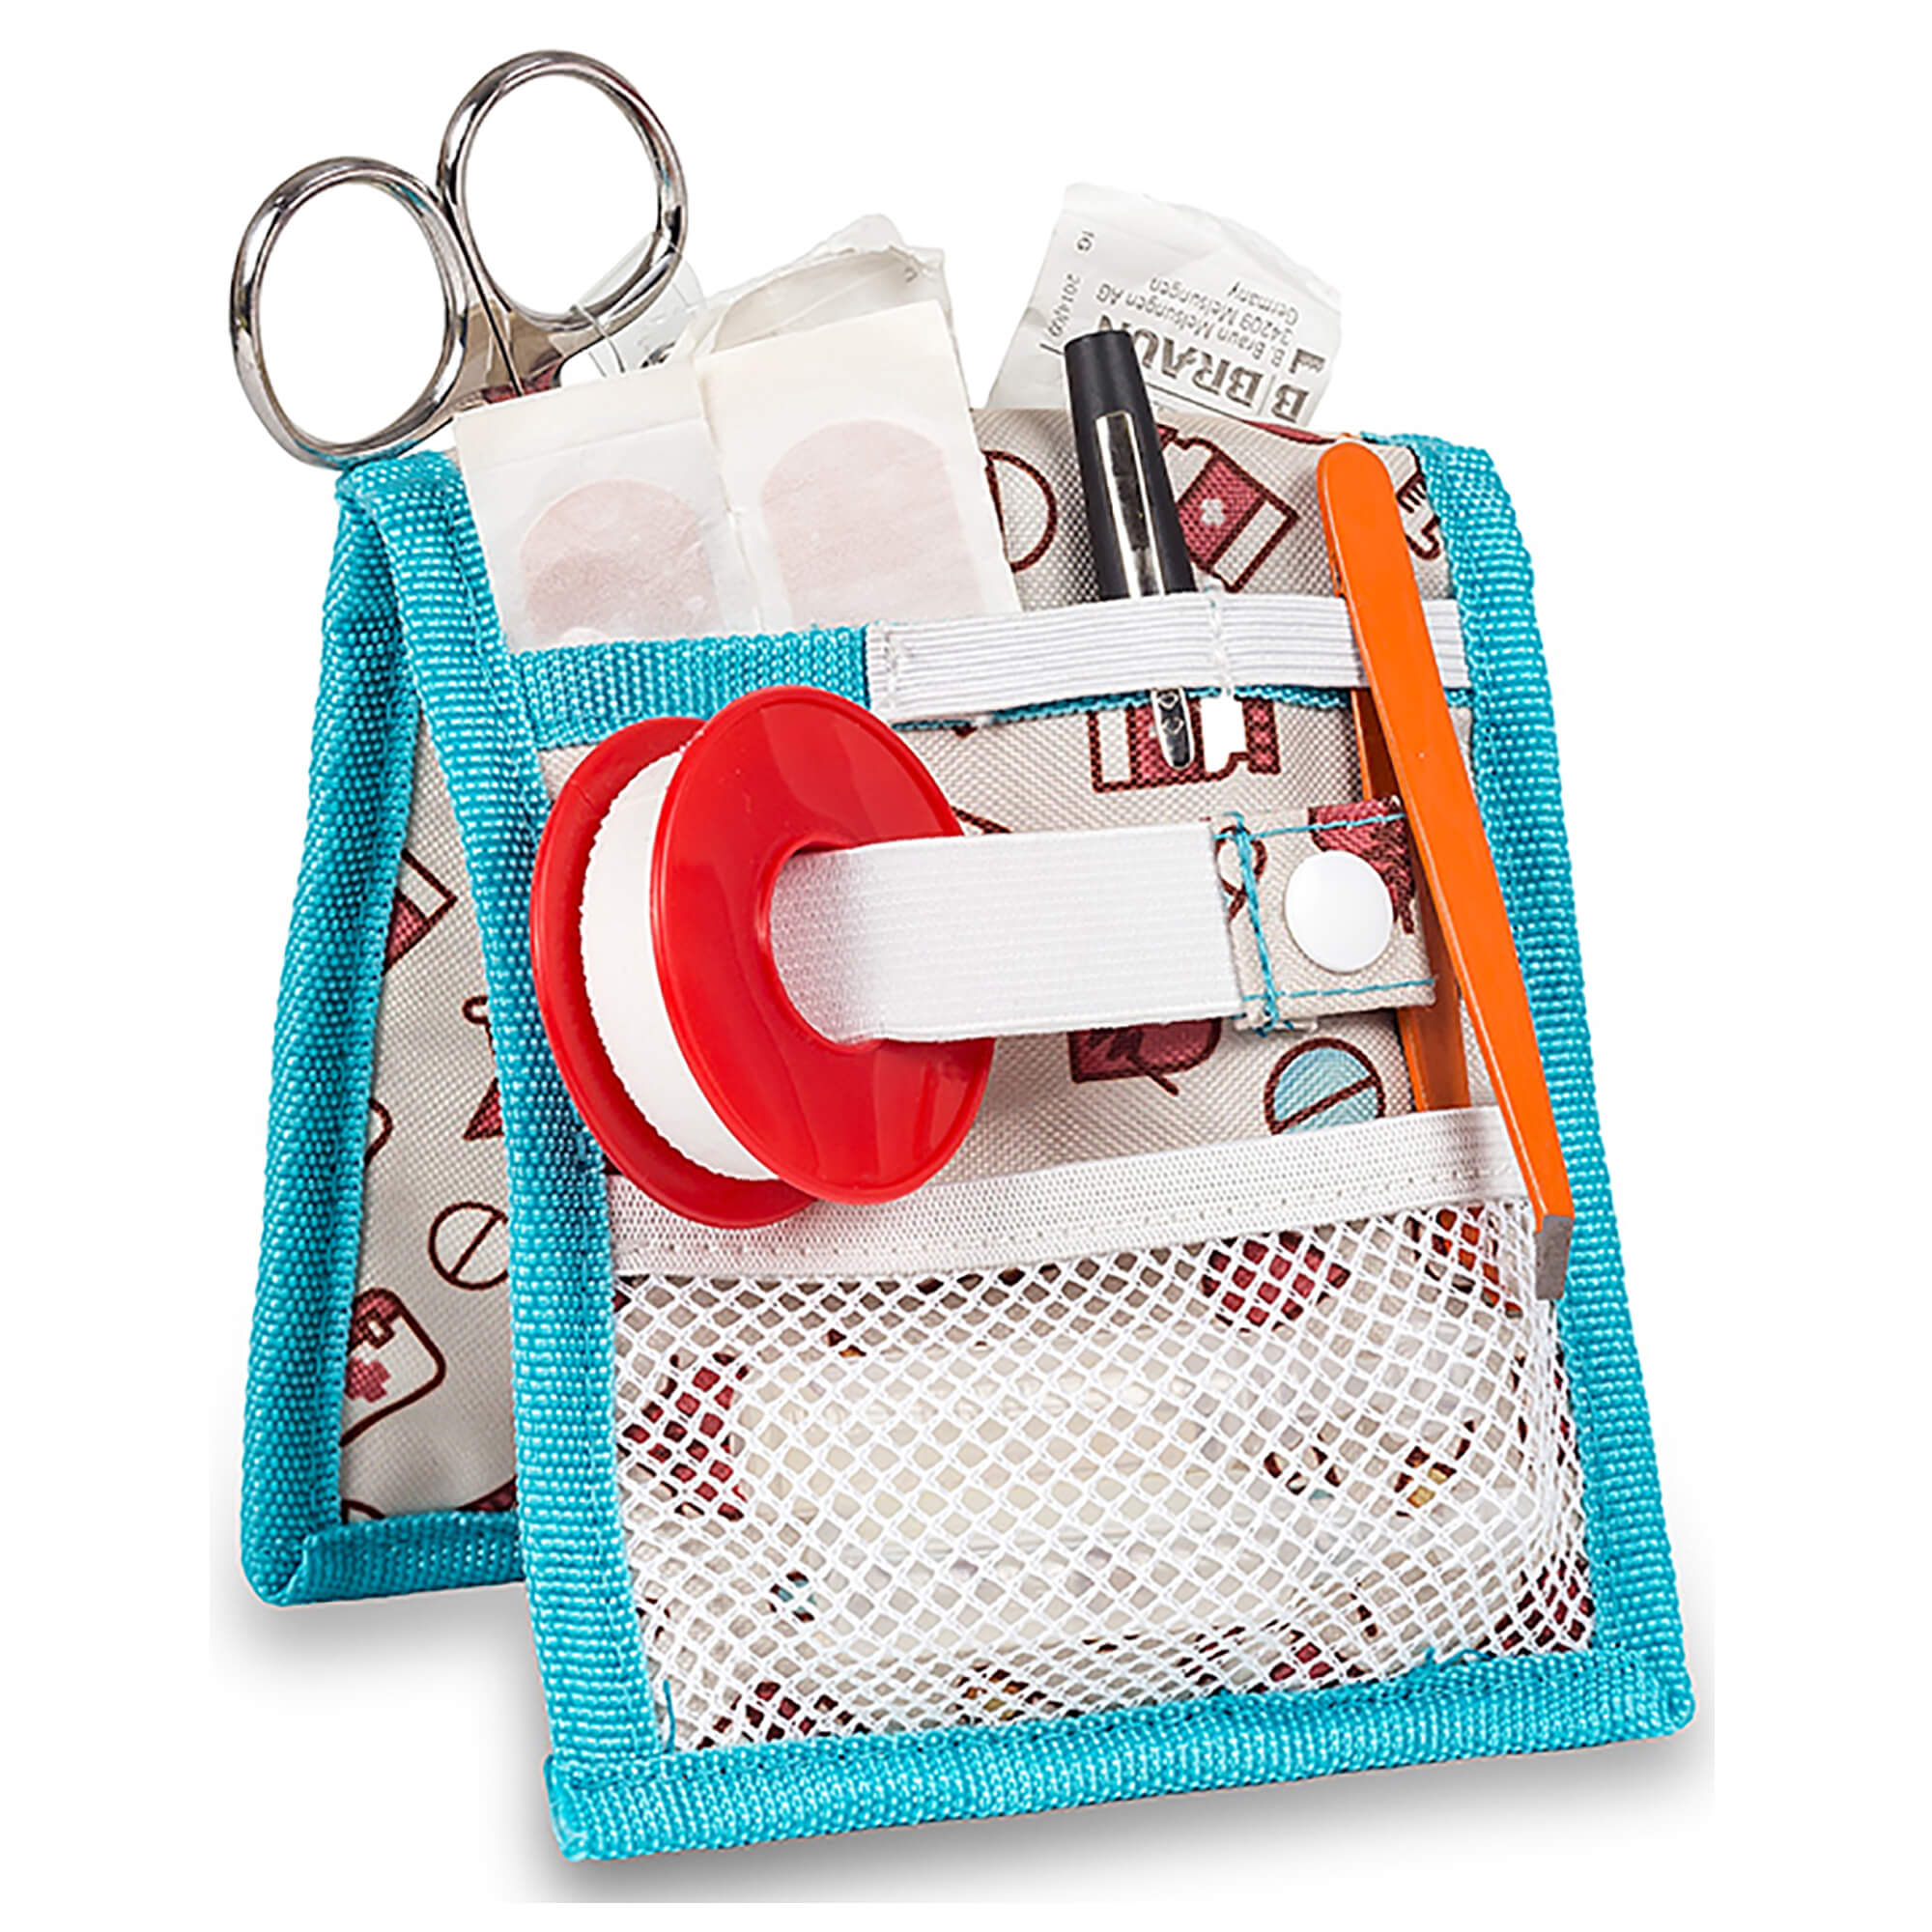 Elite Bags Taschenorganizer für Praxis, Klinik oder Pflege. Erhältlich in vielen Farben. Organizer für die persönliche Ausrüstung.